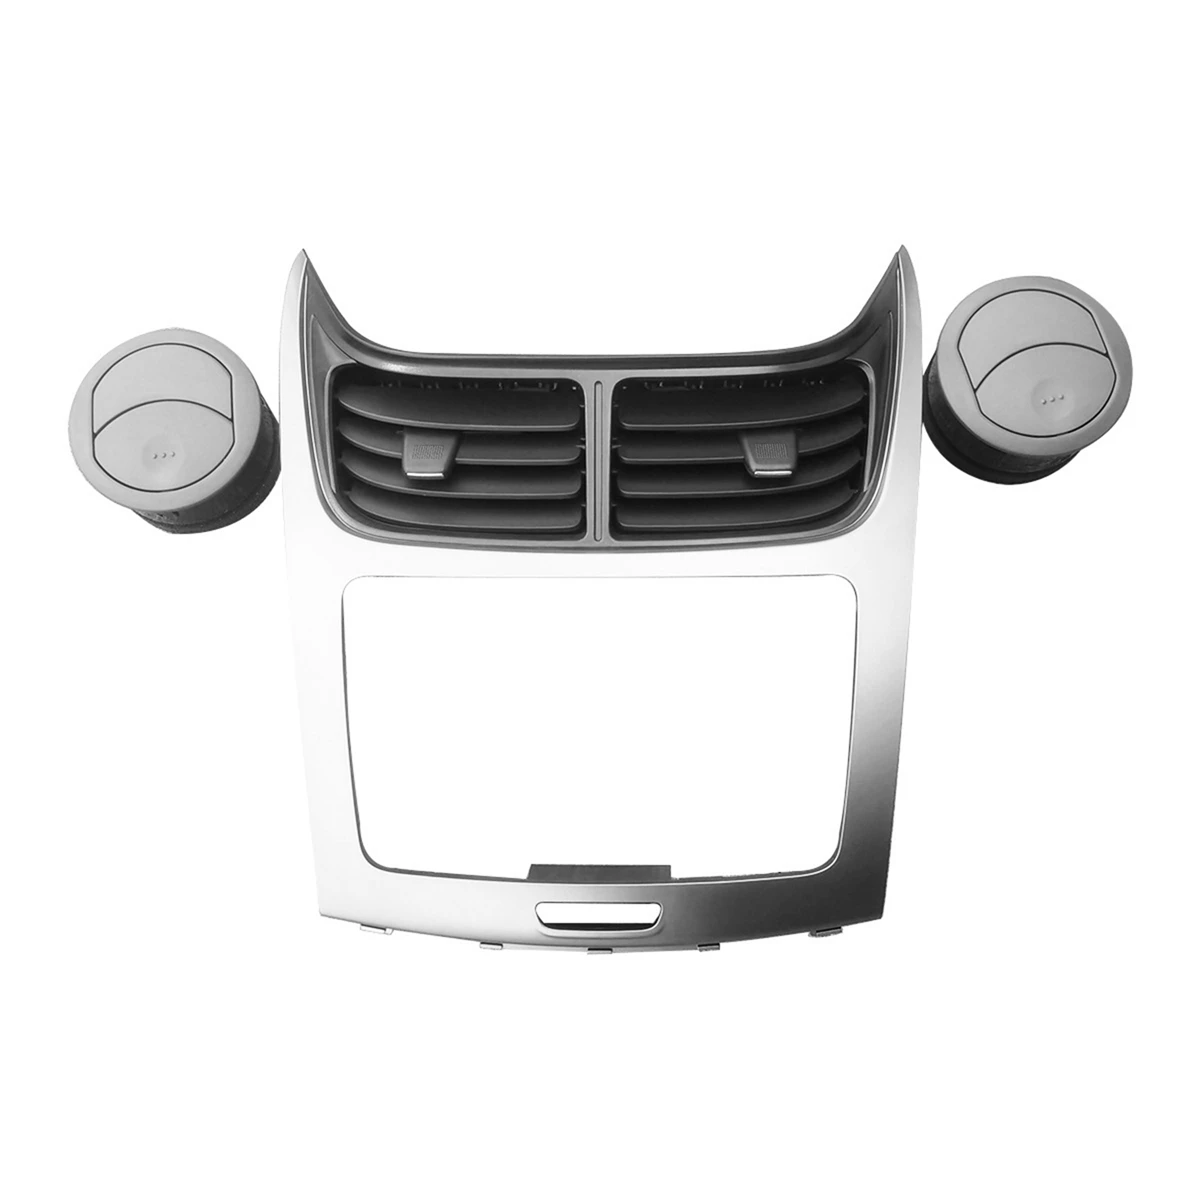 

Автомобильная рама для Chevrolet Sail 2010-2014, автомобильная система кондиционирования воздуха, вентиляционная панель, решетка радиатора